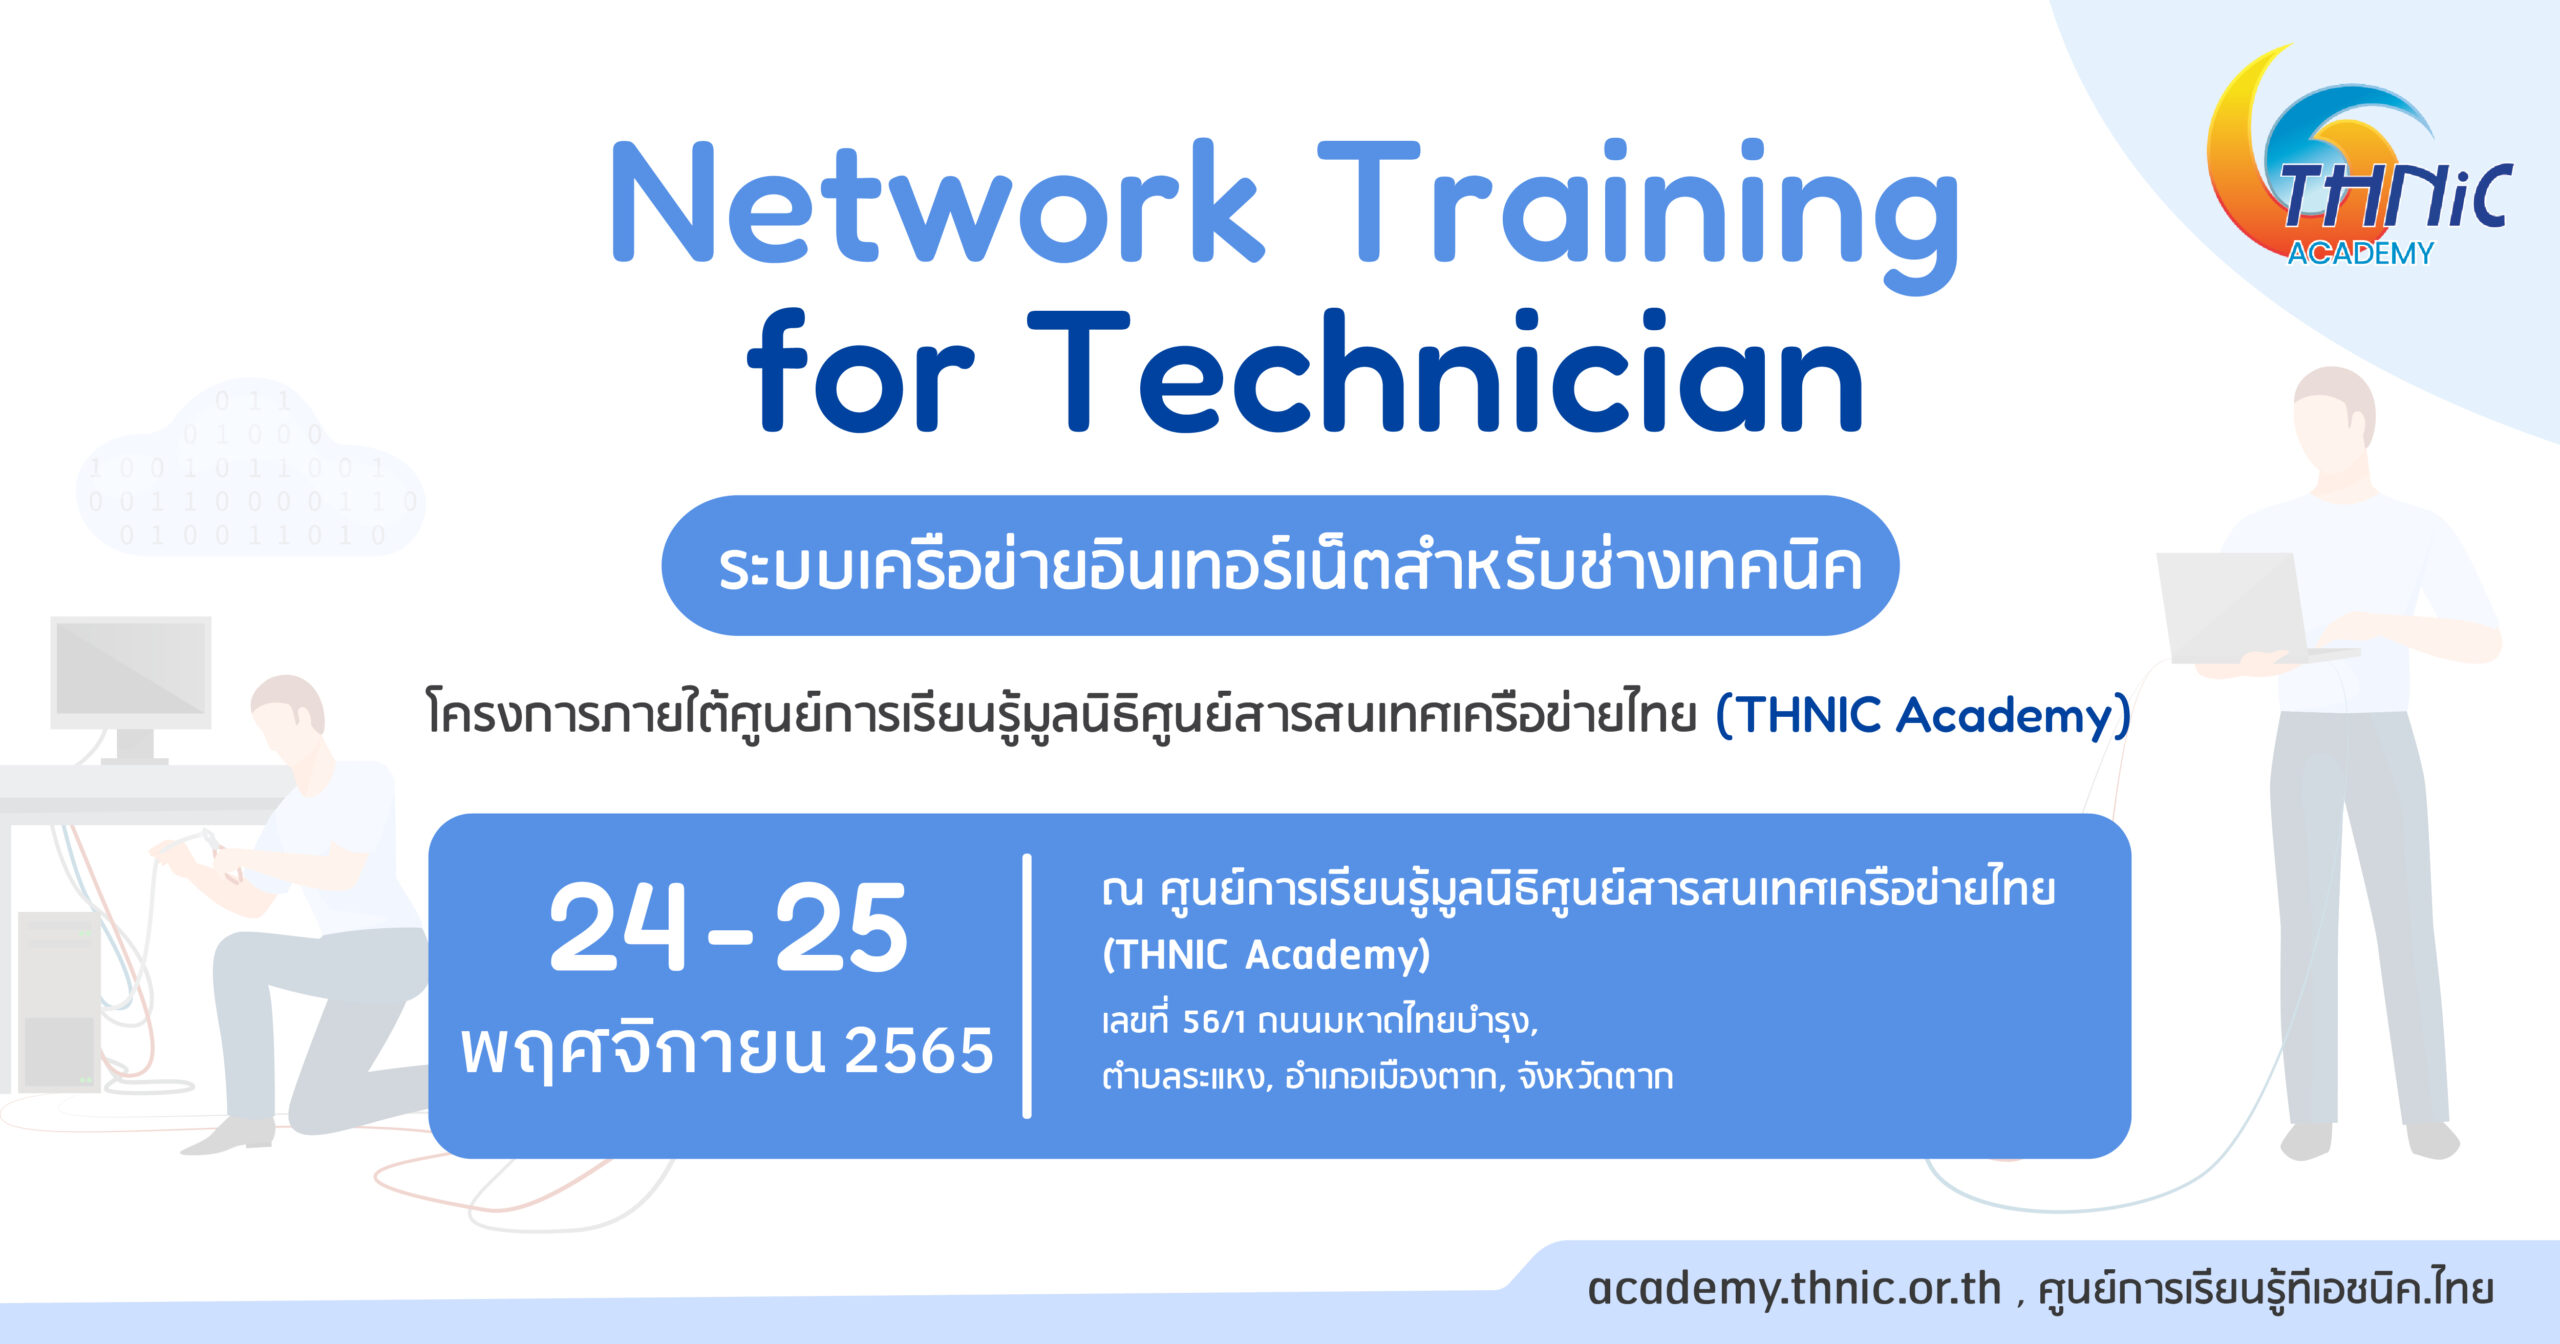 หลักสูตร ระบบเครือข่ายอินเทอร์เน็ตสำหรับช่างเทคนิค (Network Training for Technician)